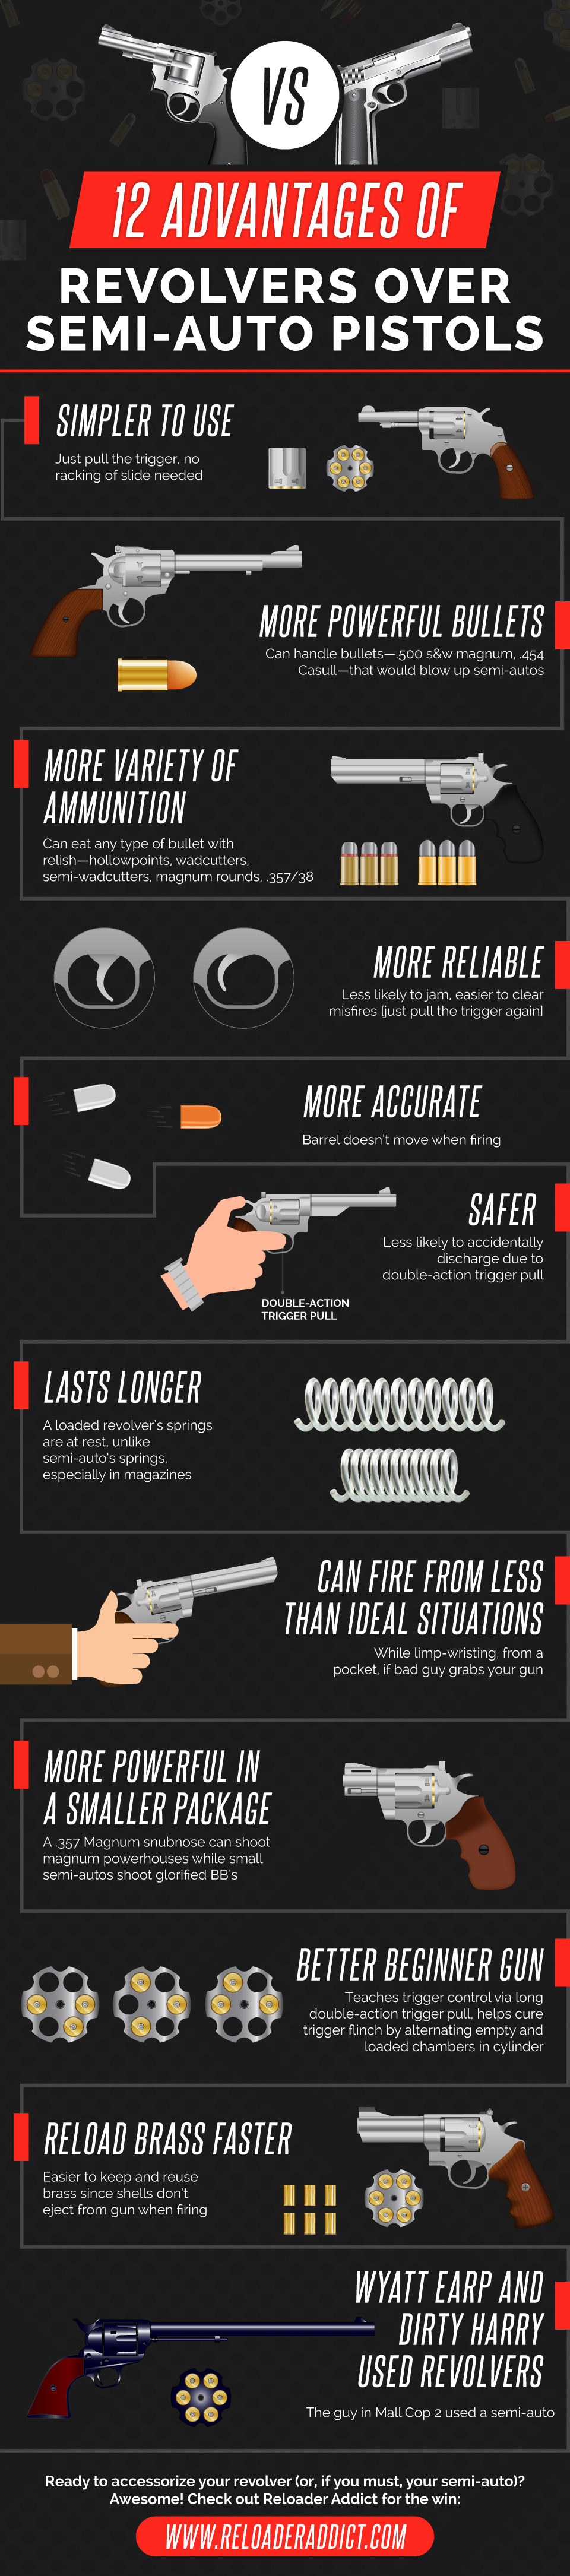 12 Advantages of Revolvers Over Semi-Auto Pistols